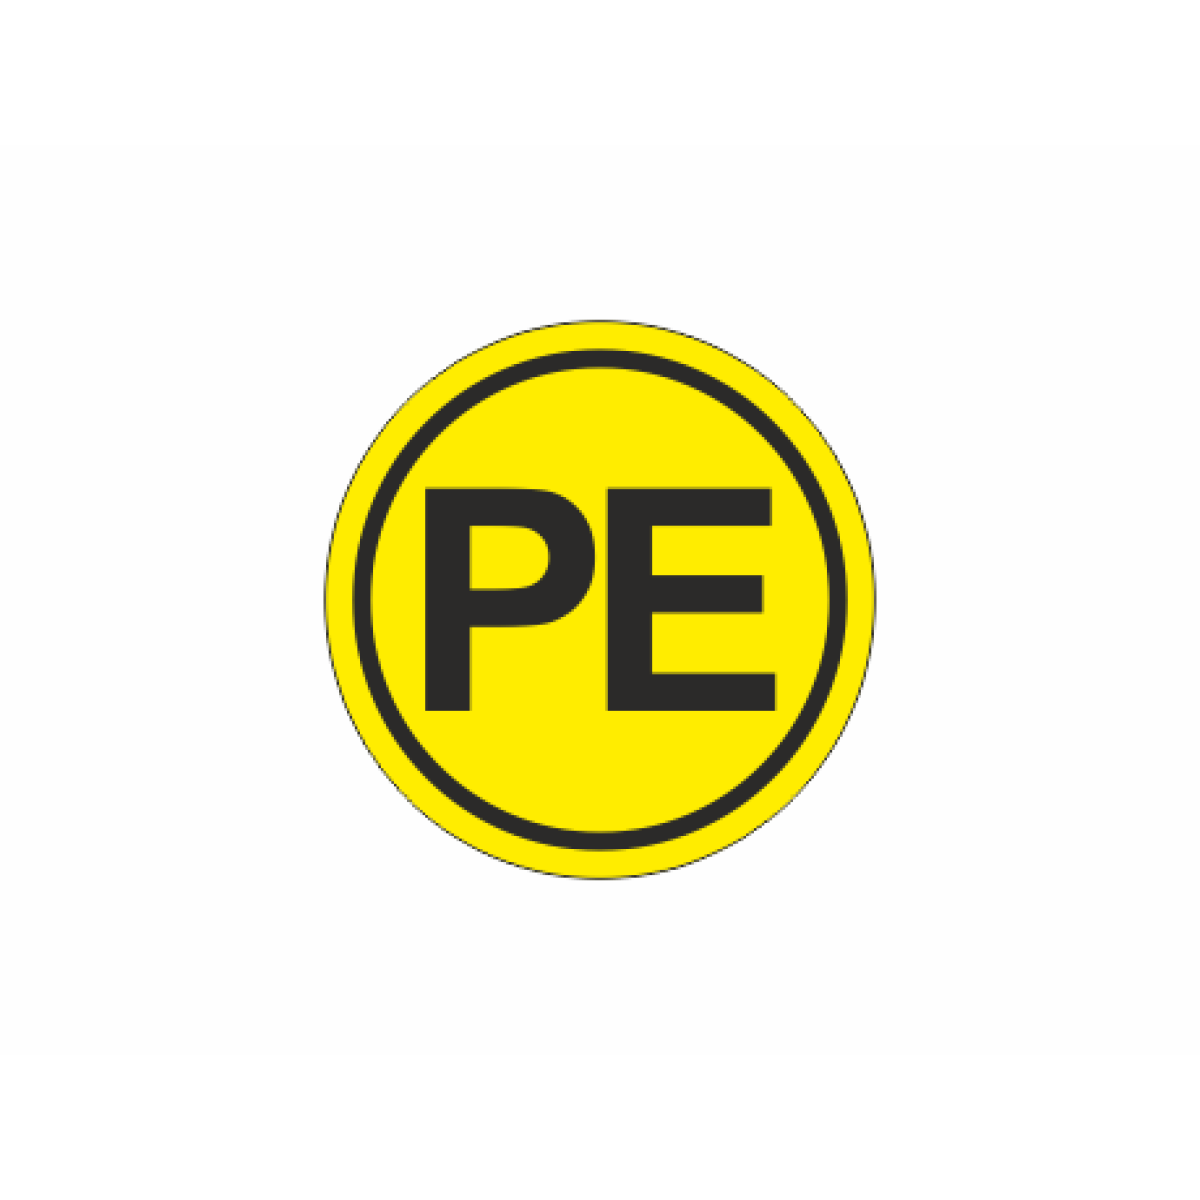 Знак PE